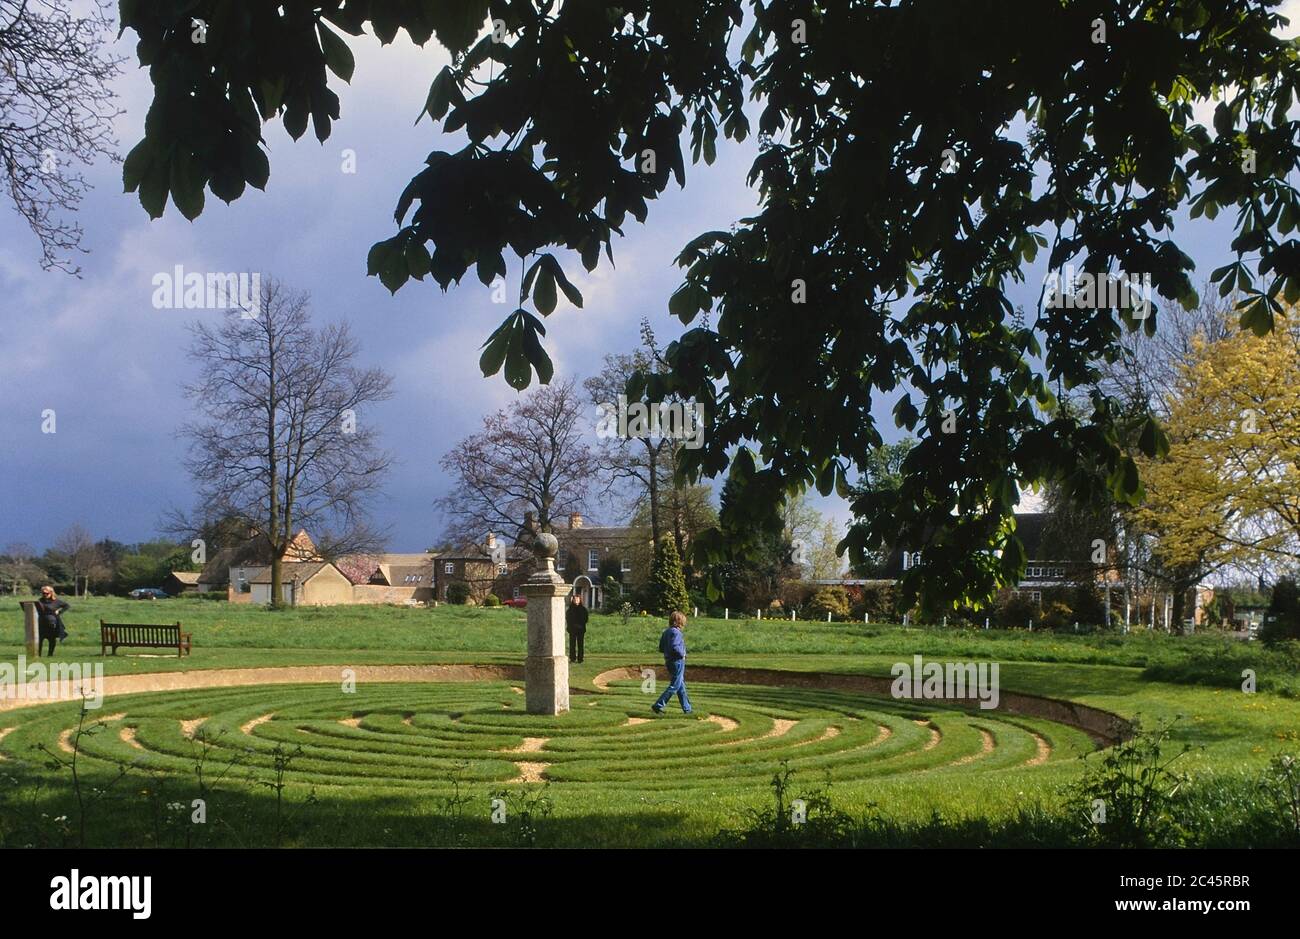 Hilton Maze and Monument, Hilton, Huntingdon, Cambridgeshire, England, UK Stock Photo